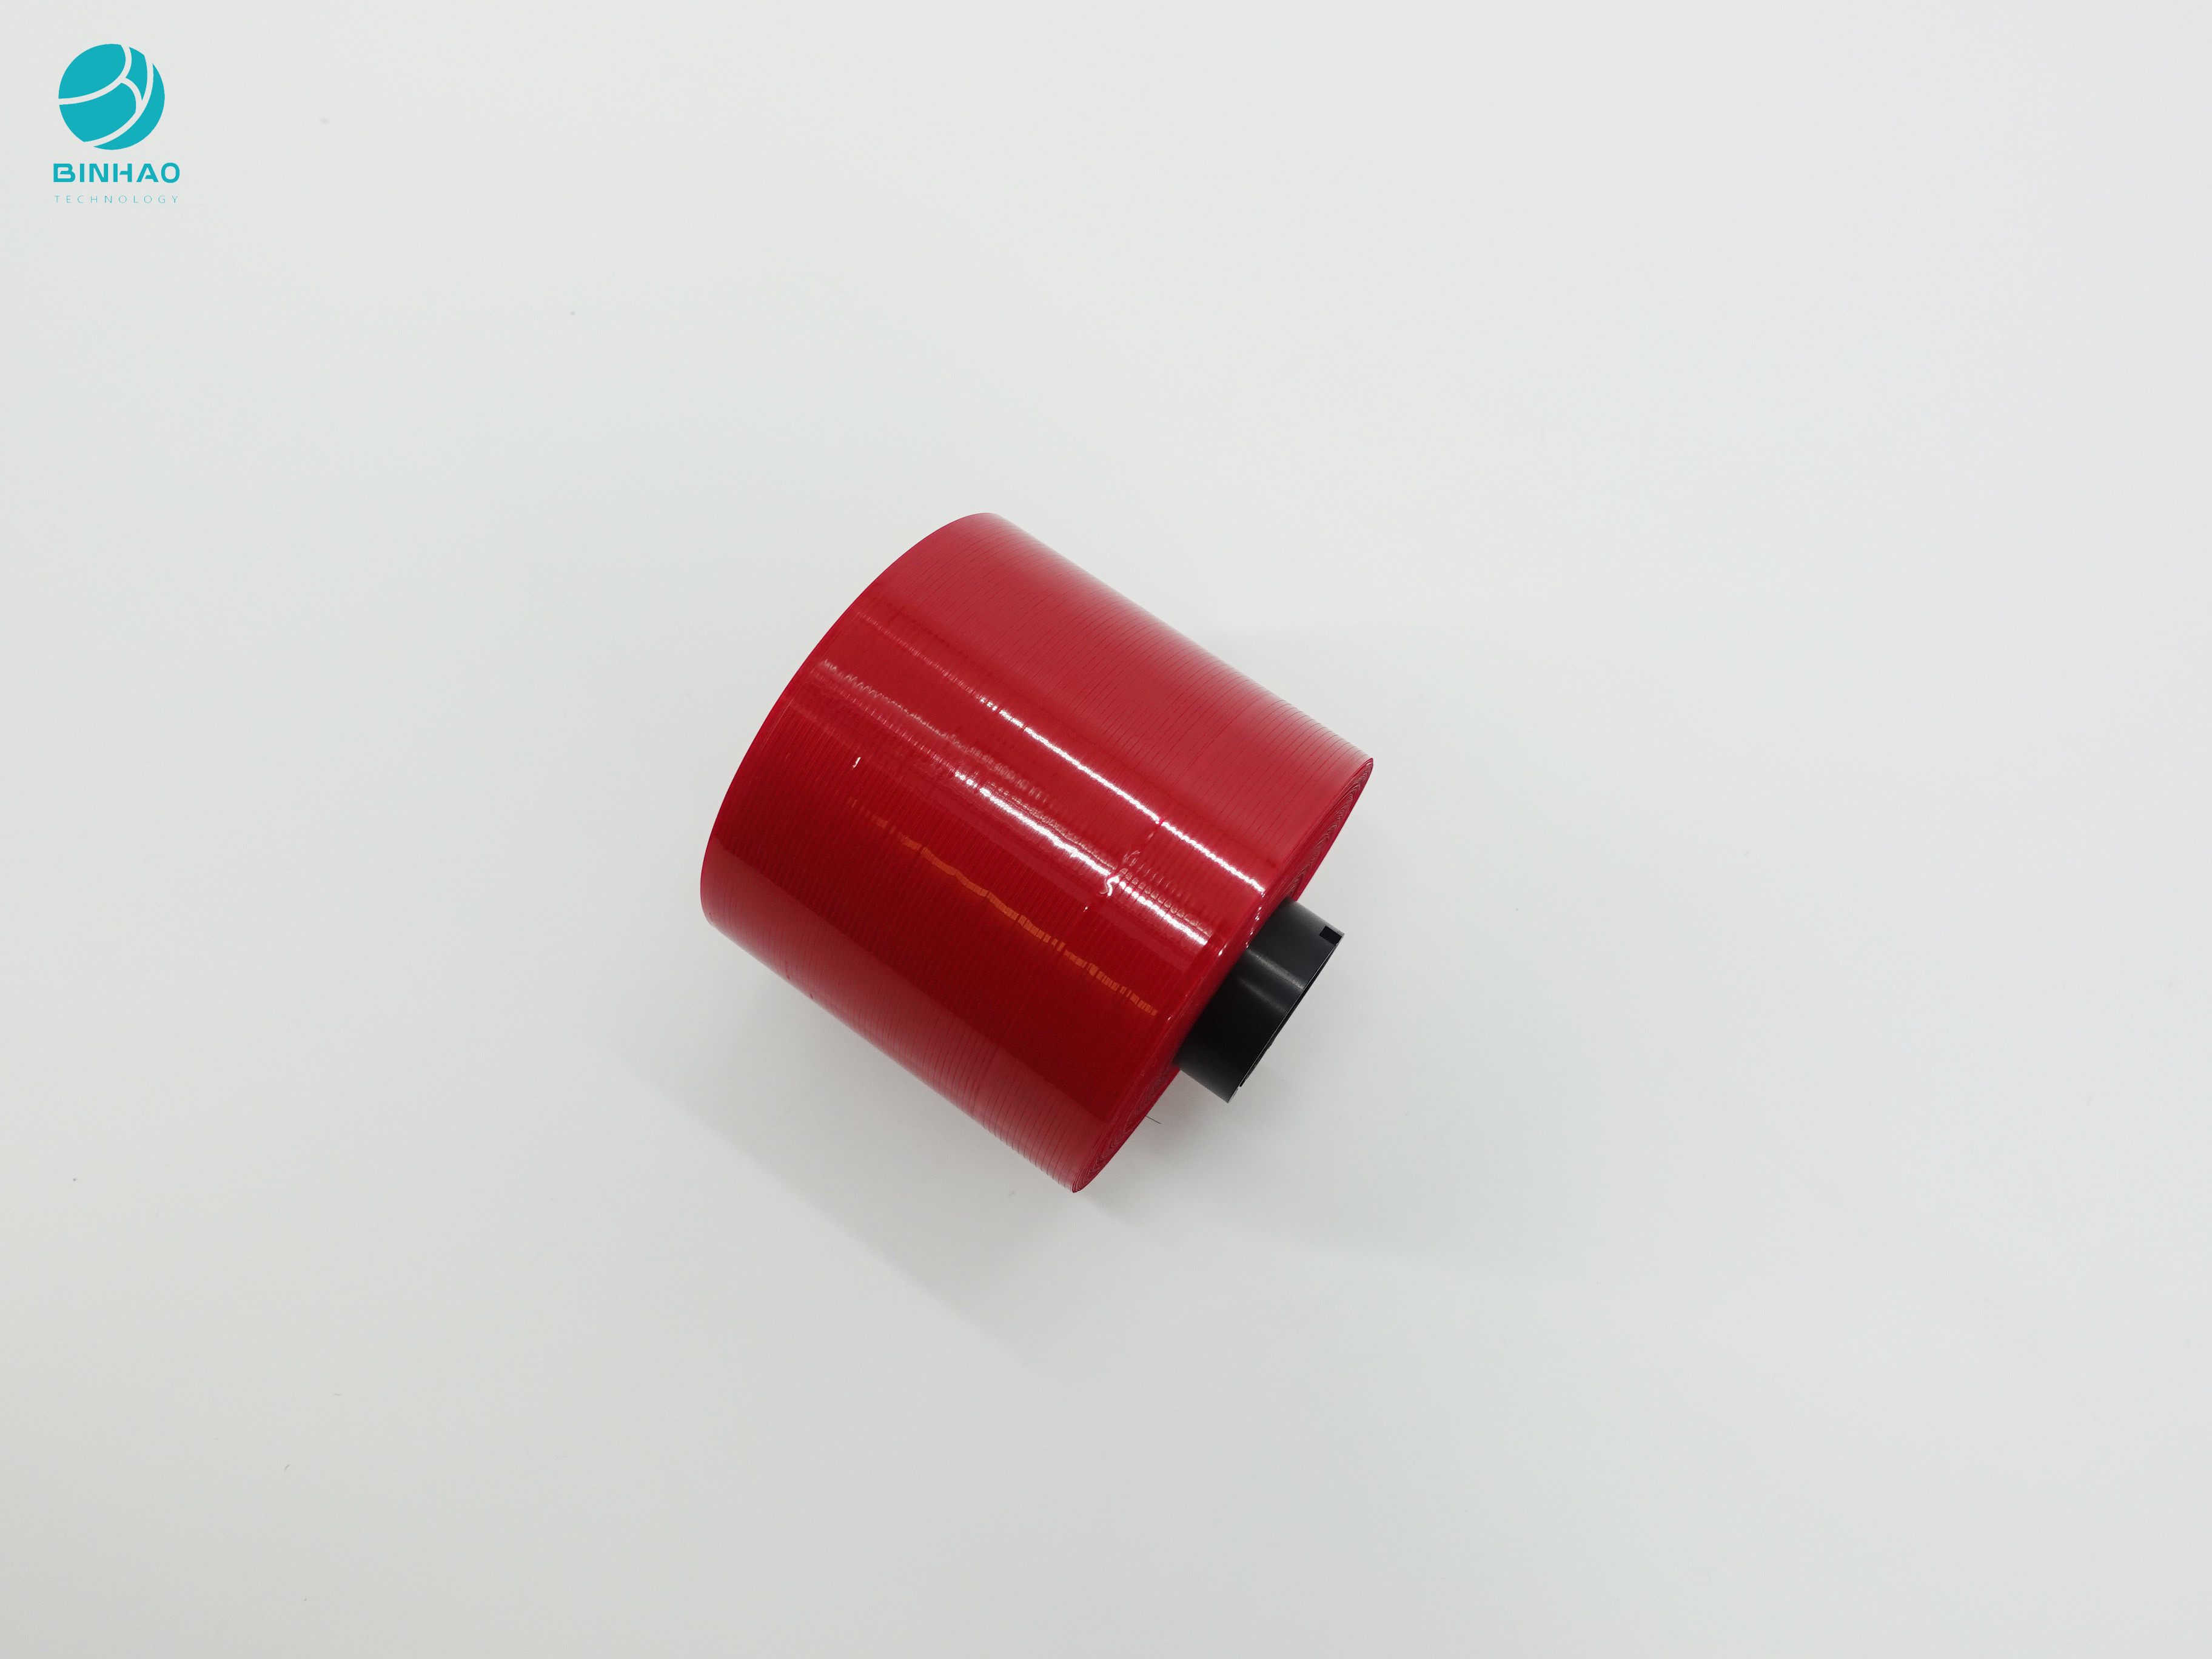 Ciemnoczerwona konstrukcja zapobiegająca podrabianiu Taśma zrywana 3 mm do pakowania pudełek po papierosach